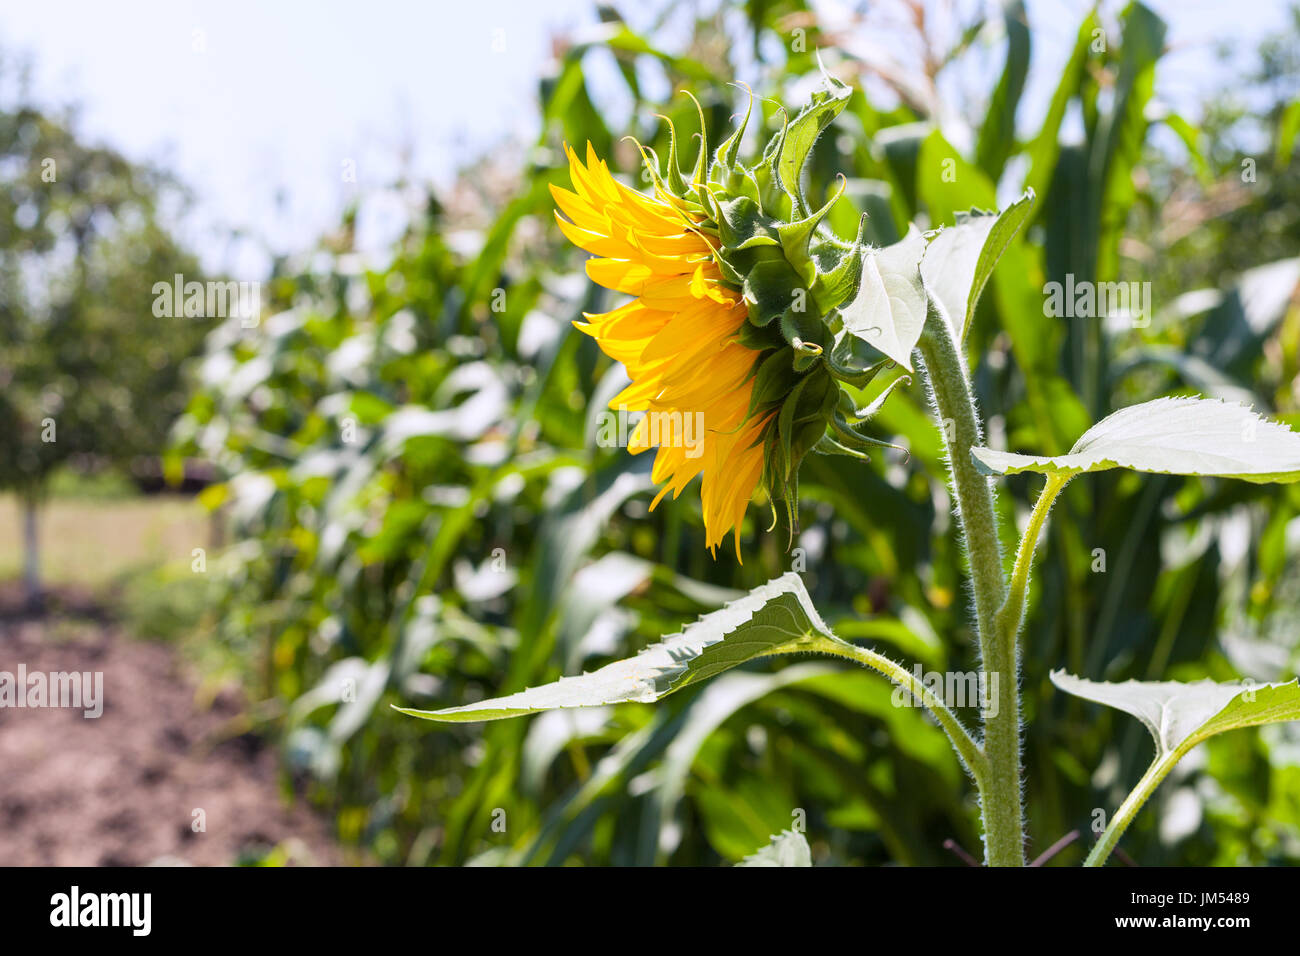 sunflower in garden in summer season in Krasnodar region of Russia Stock Photo